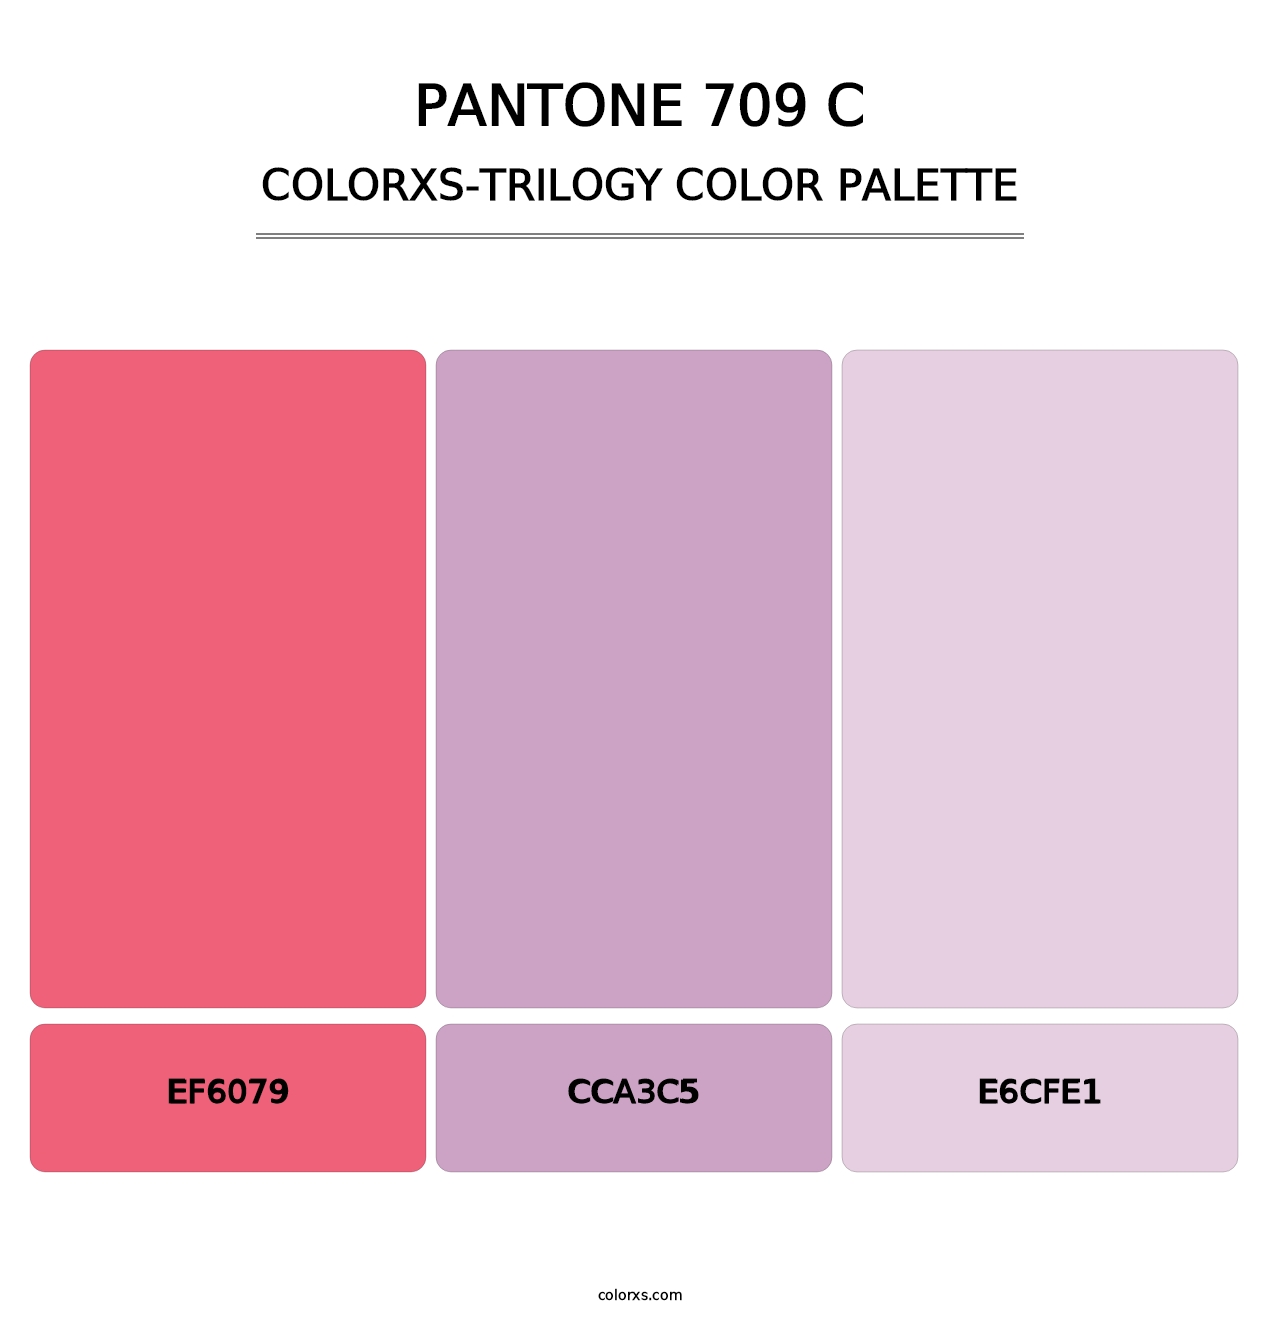 PANTONE 709 C - Colorxs Trilogy Palette